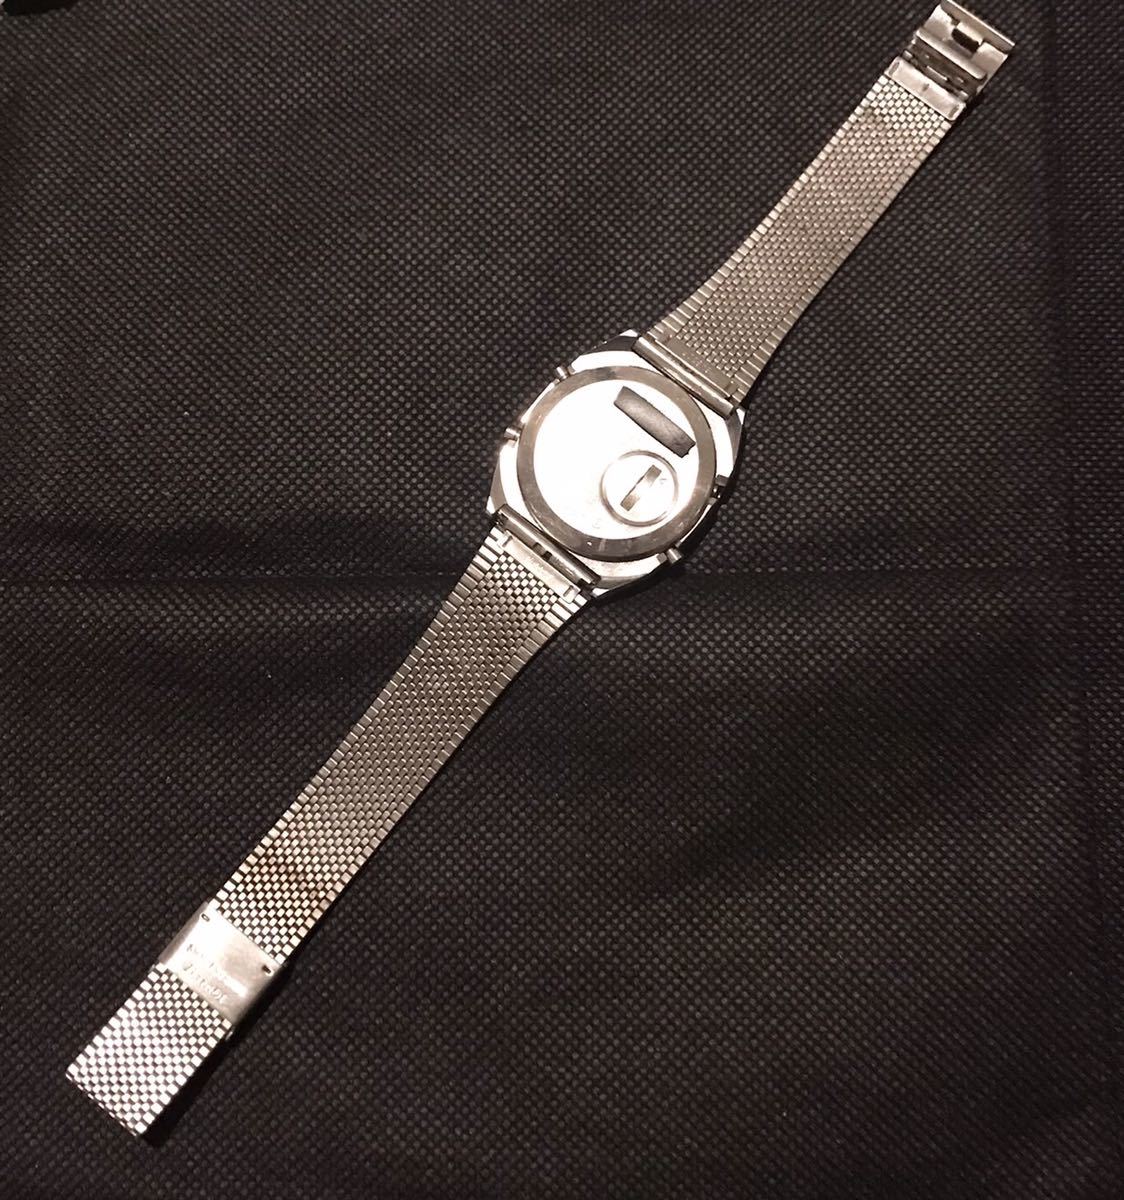 SEIKO A259-5080 アラーム クロノグラフ デジタル クォーツ 腕時計 稼働品 完動品 良品 美品_画像10